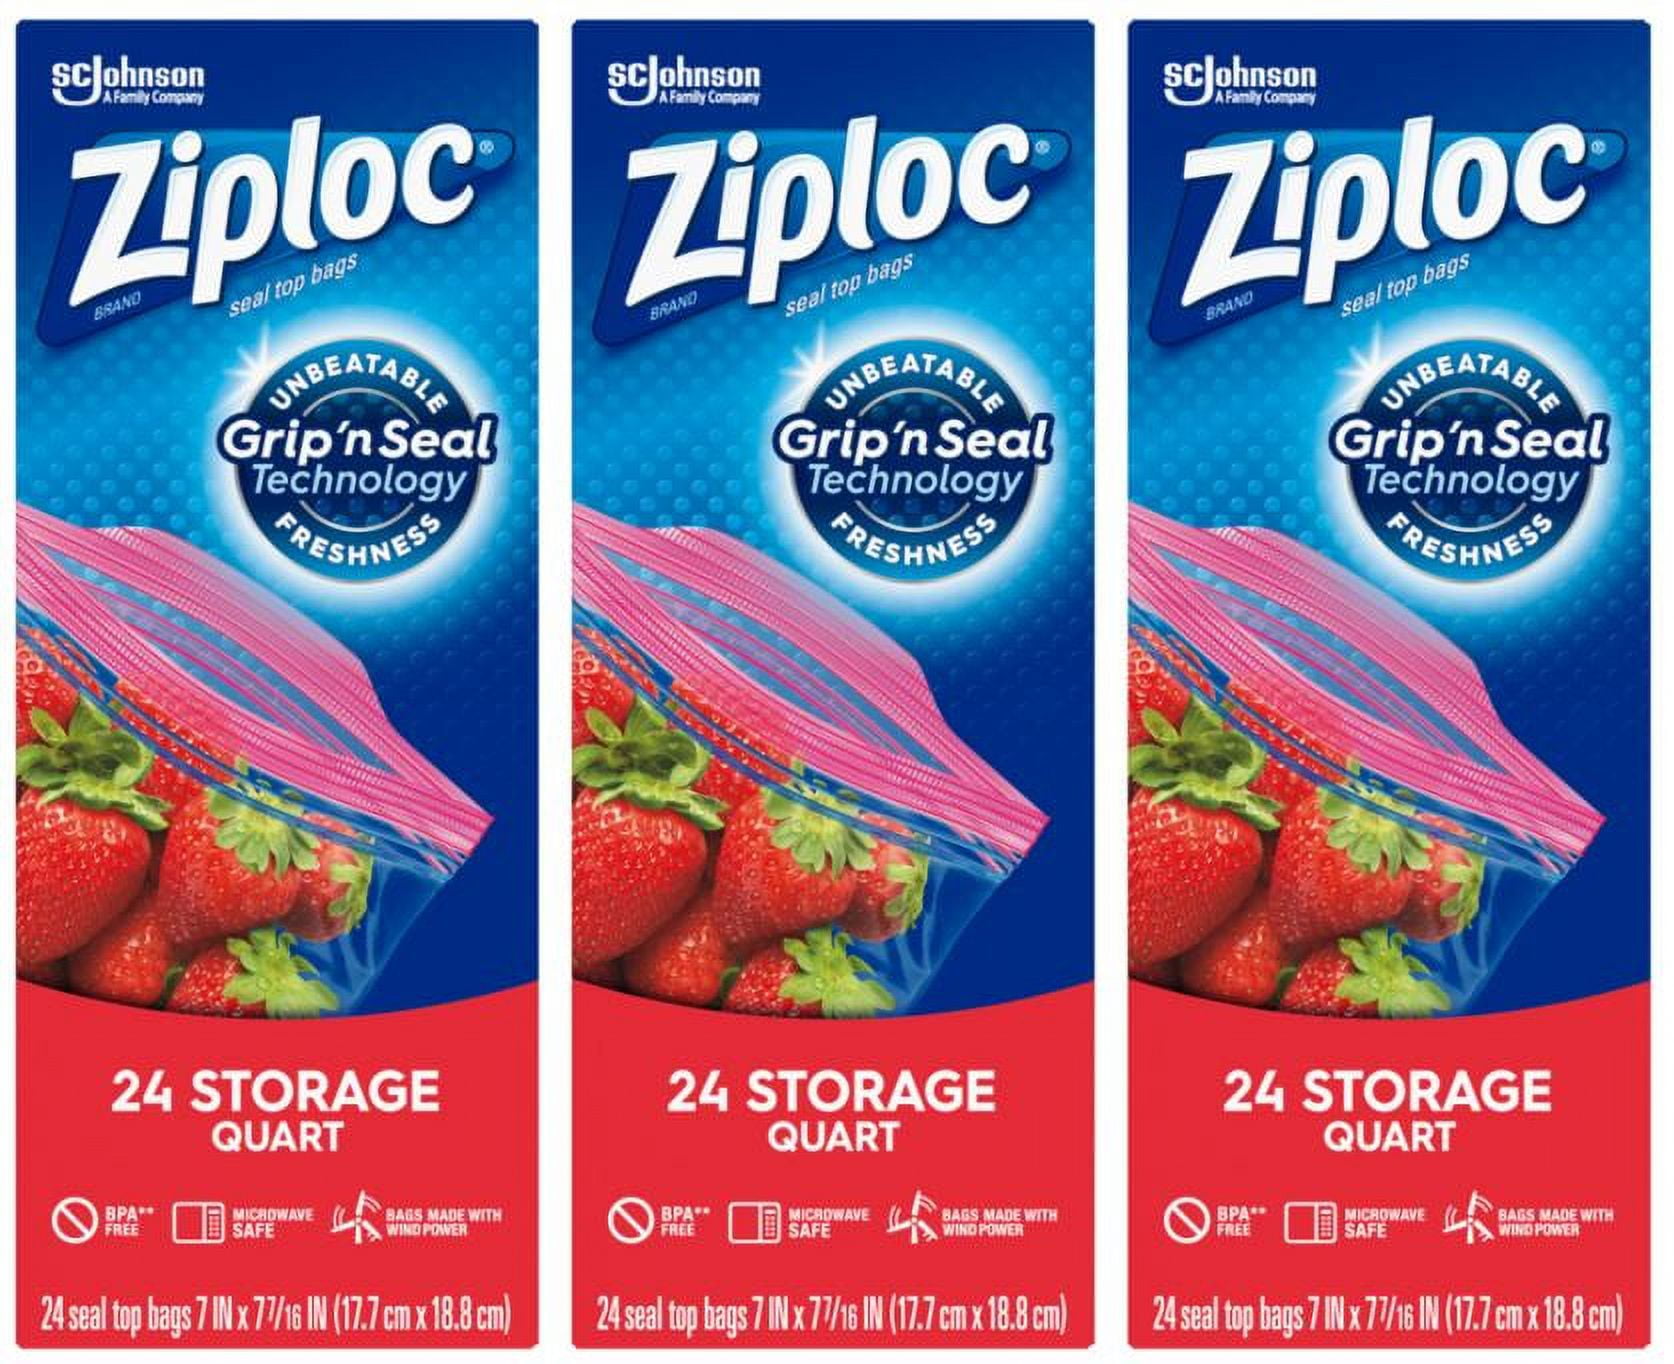 Ziploc Storage Bags Quart, 24 ct 